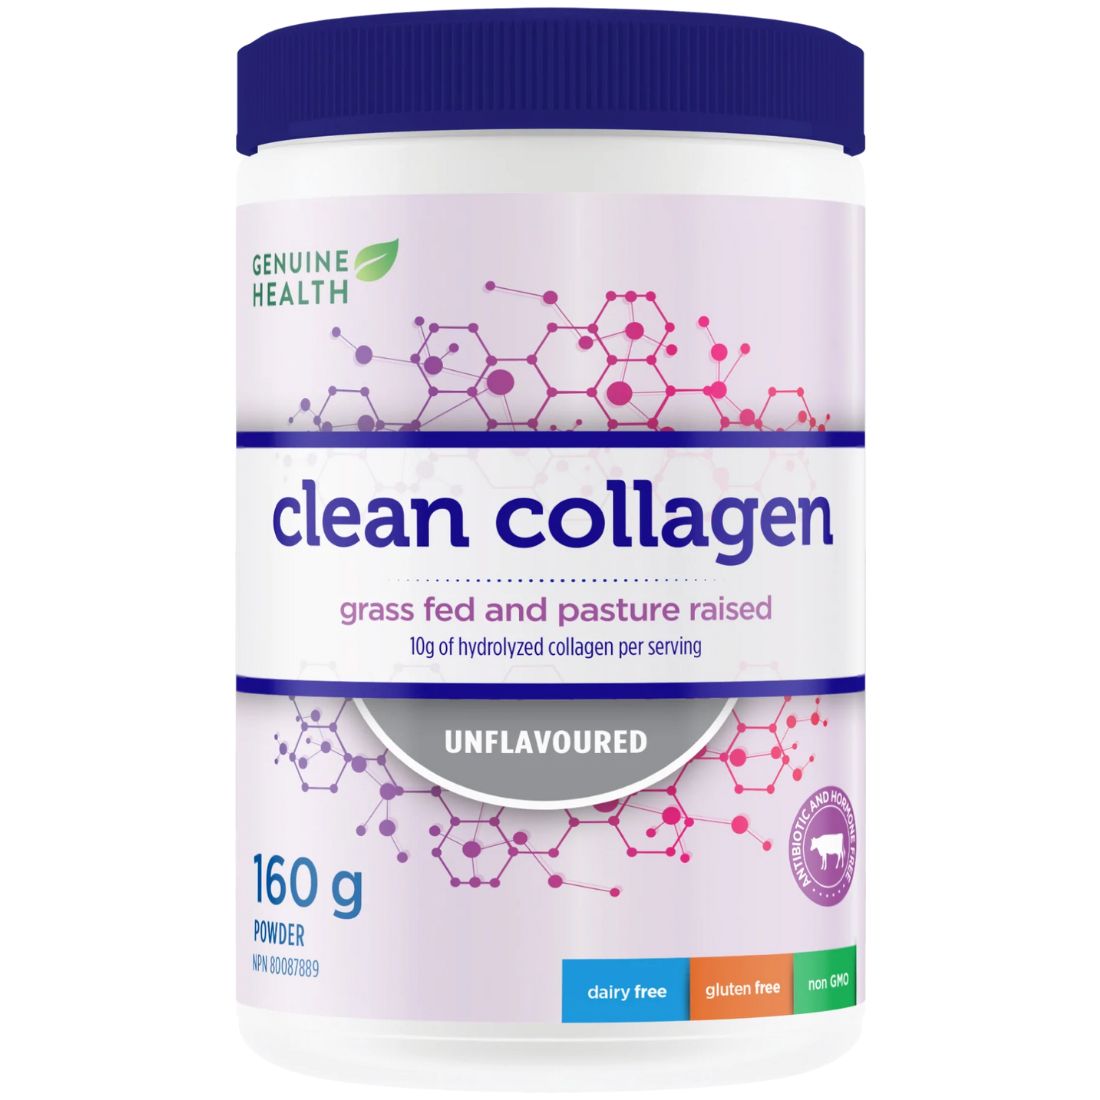 Genuine Health Clean Collagen (Grass Fed Pasture Raised Bovine)